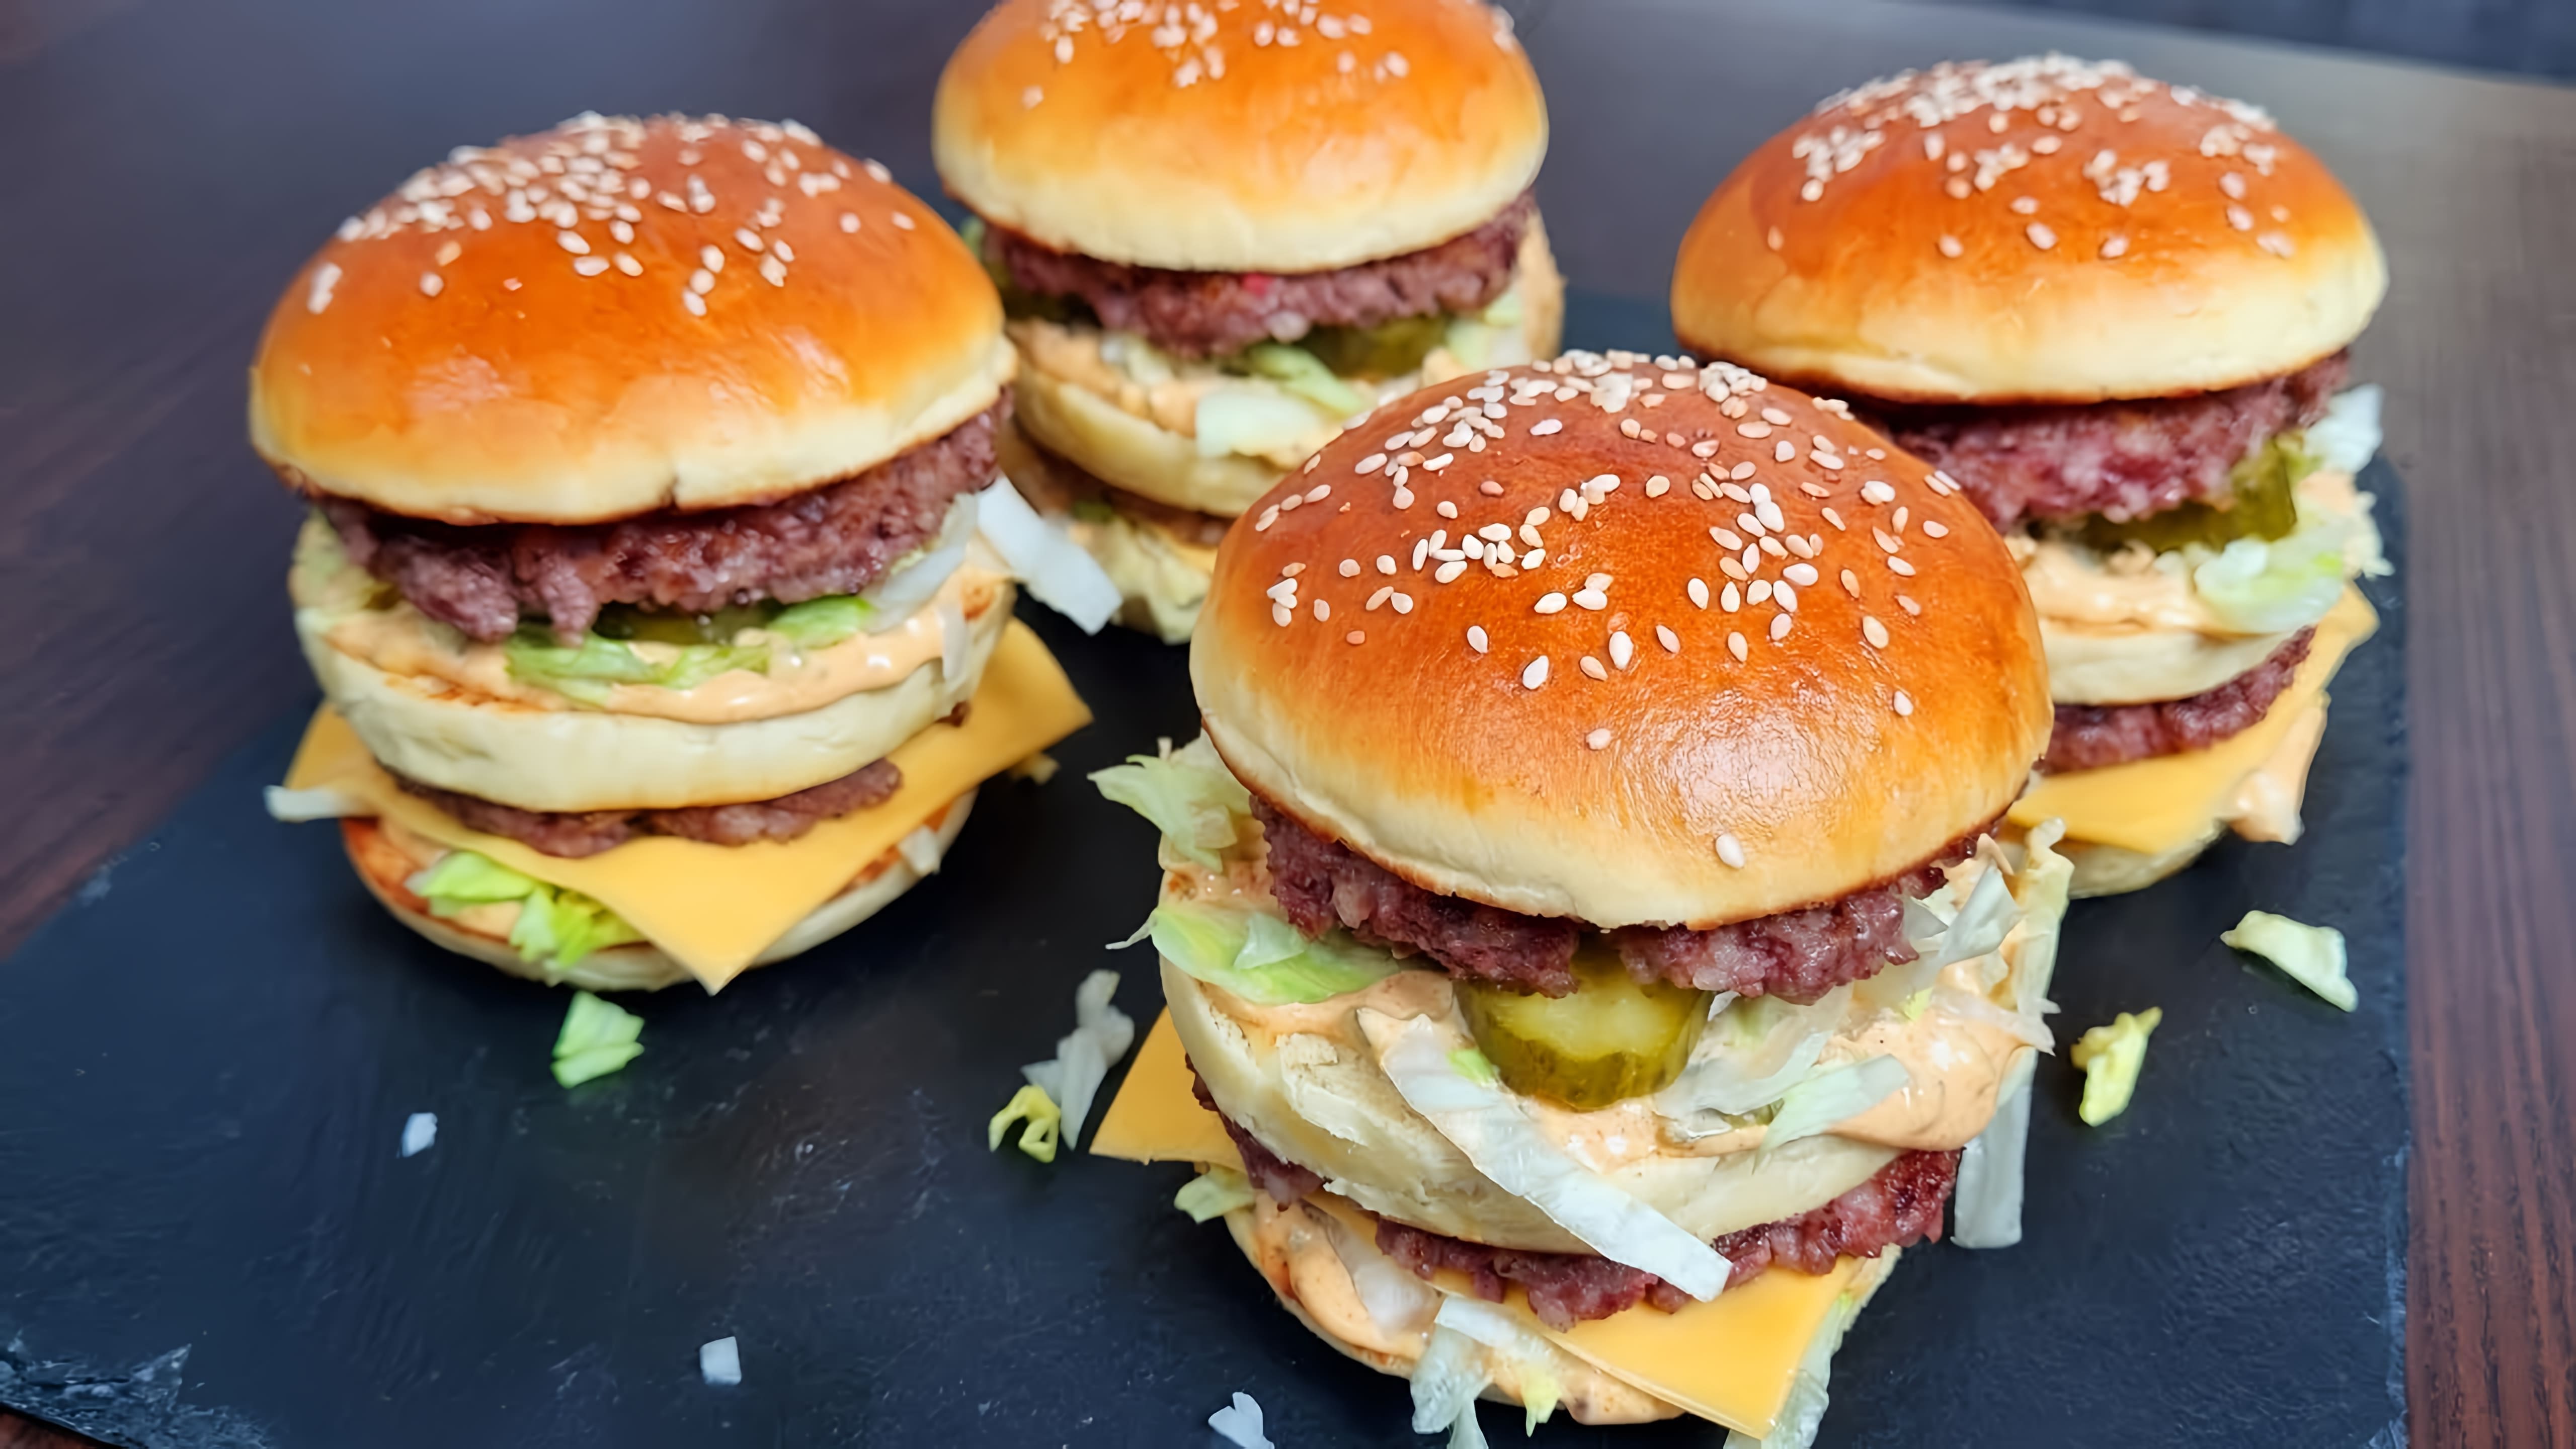 Видео раскрывает секретный рецепт приготовления бургера Big Mac и специального соуса дома